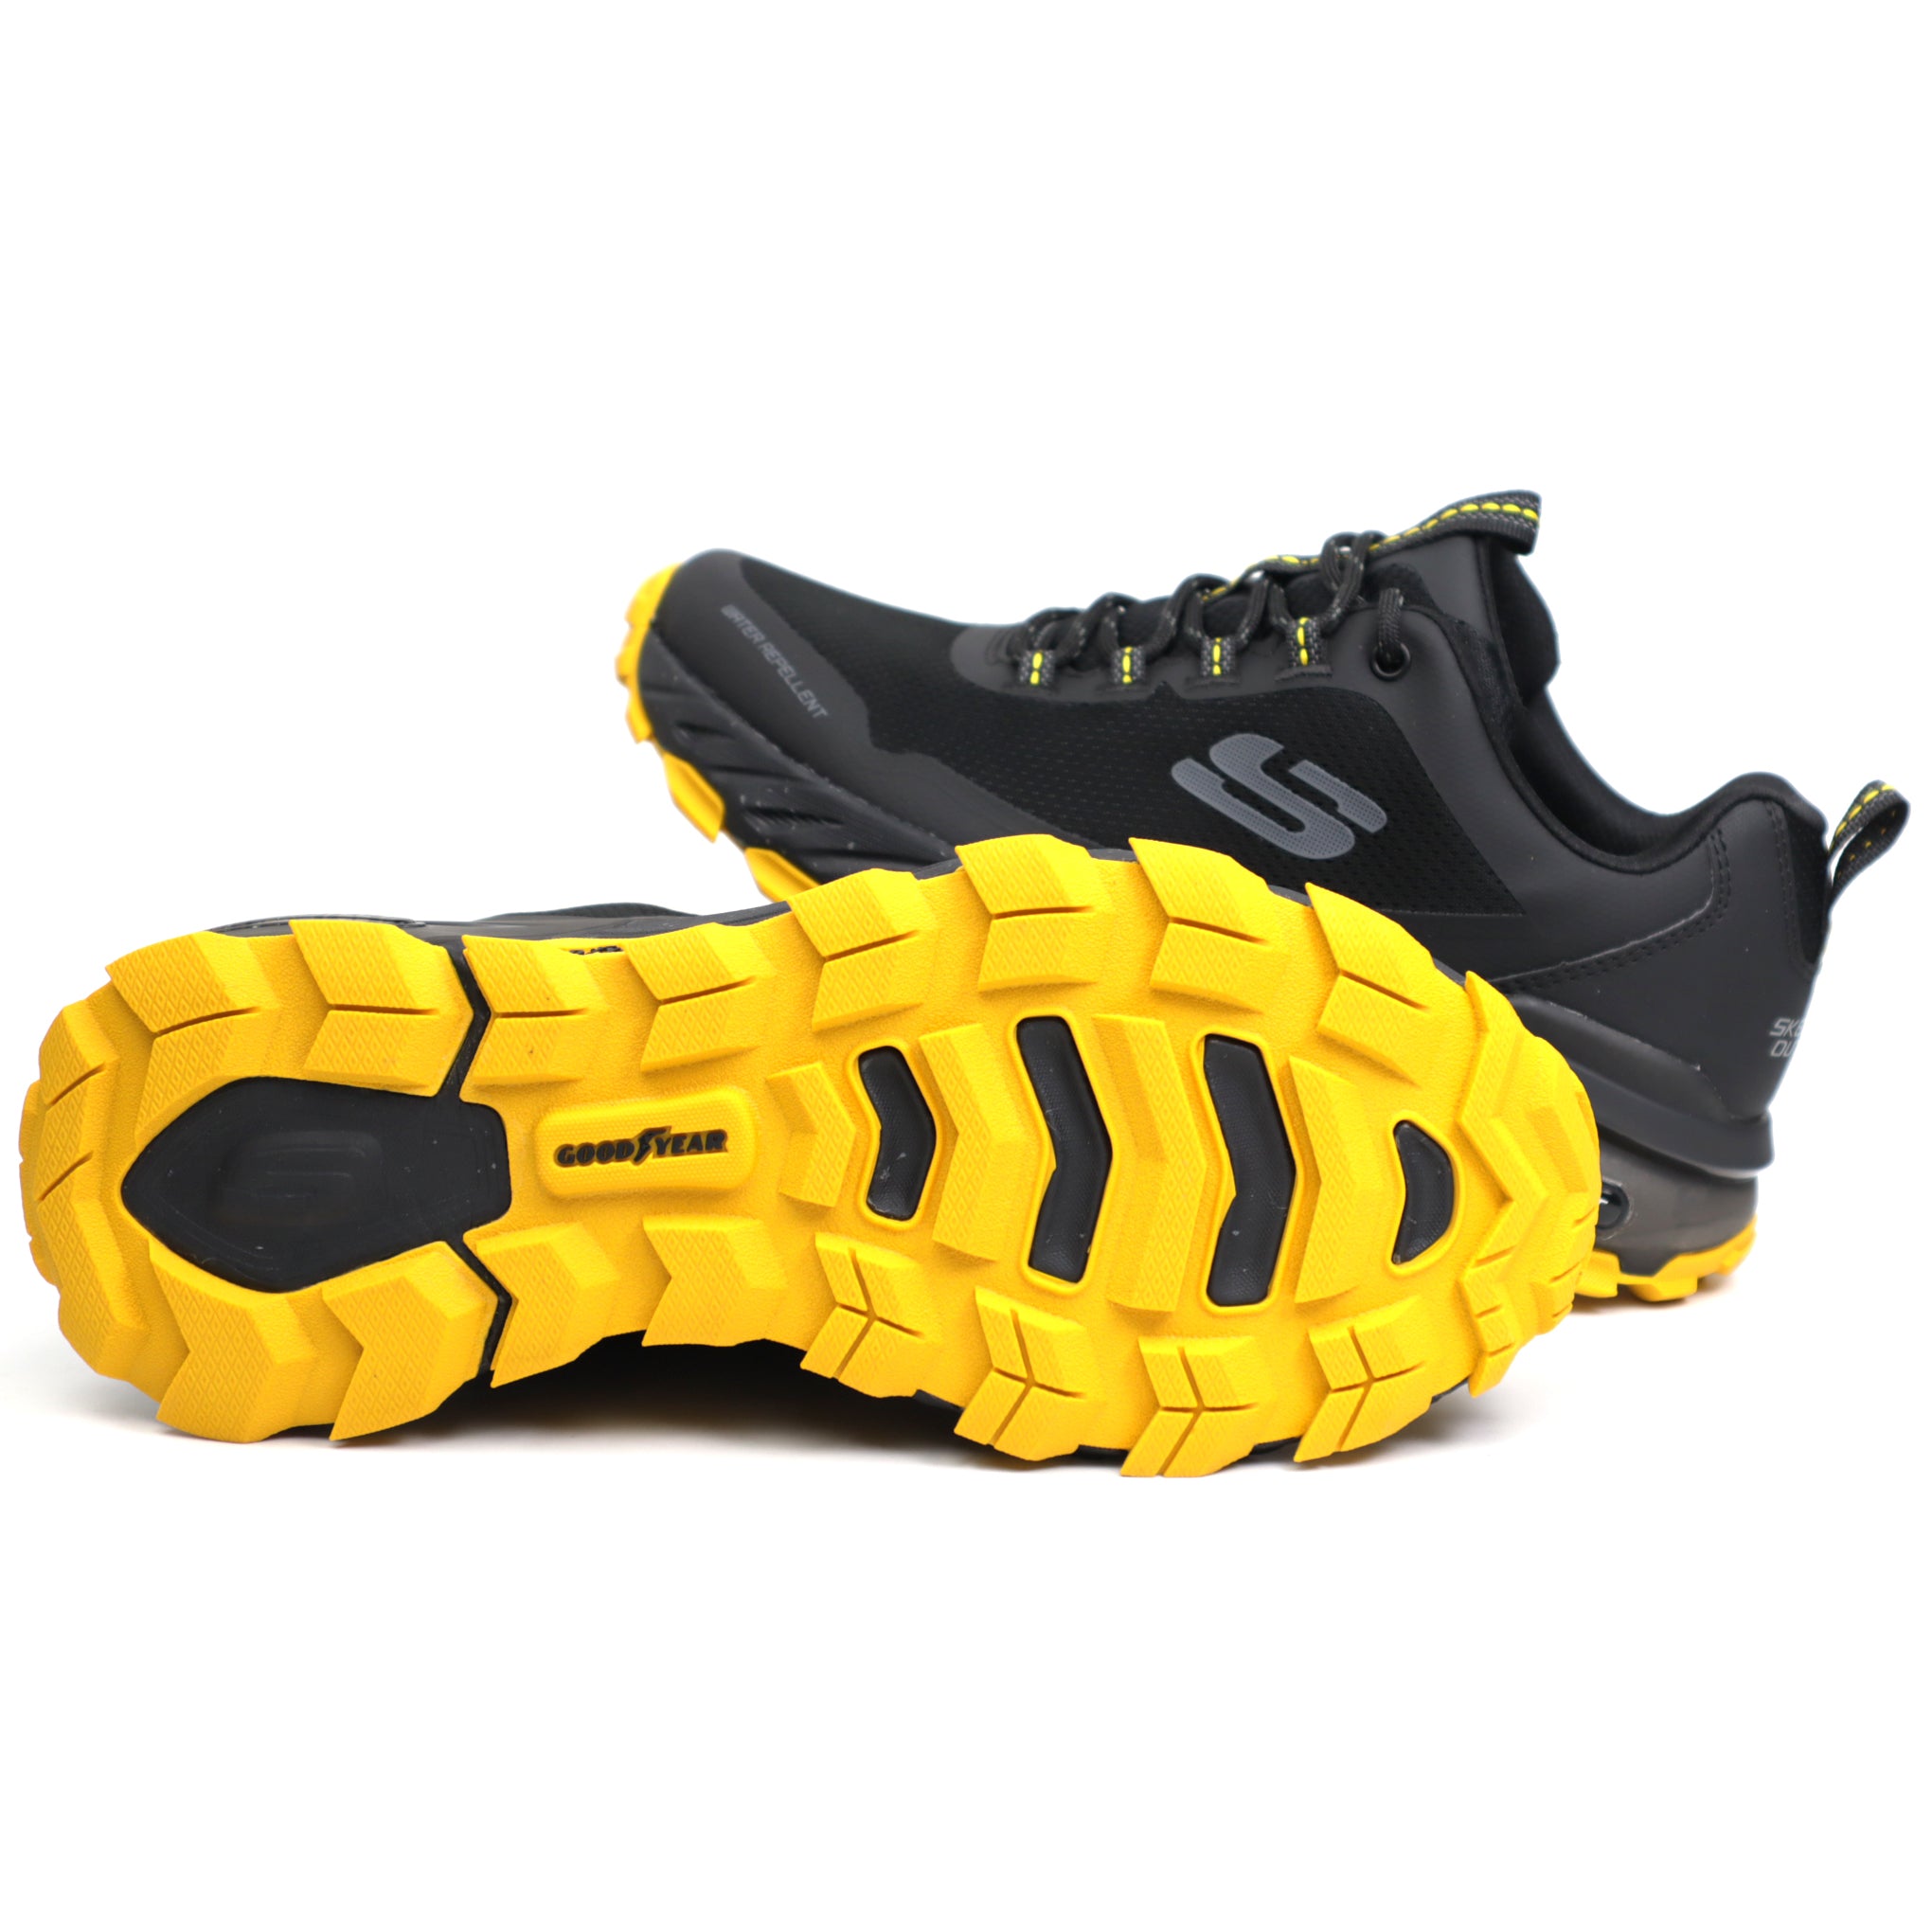 Skechers Pantofi barbati 237301 Max Protect Liberated negru IB2303-NG